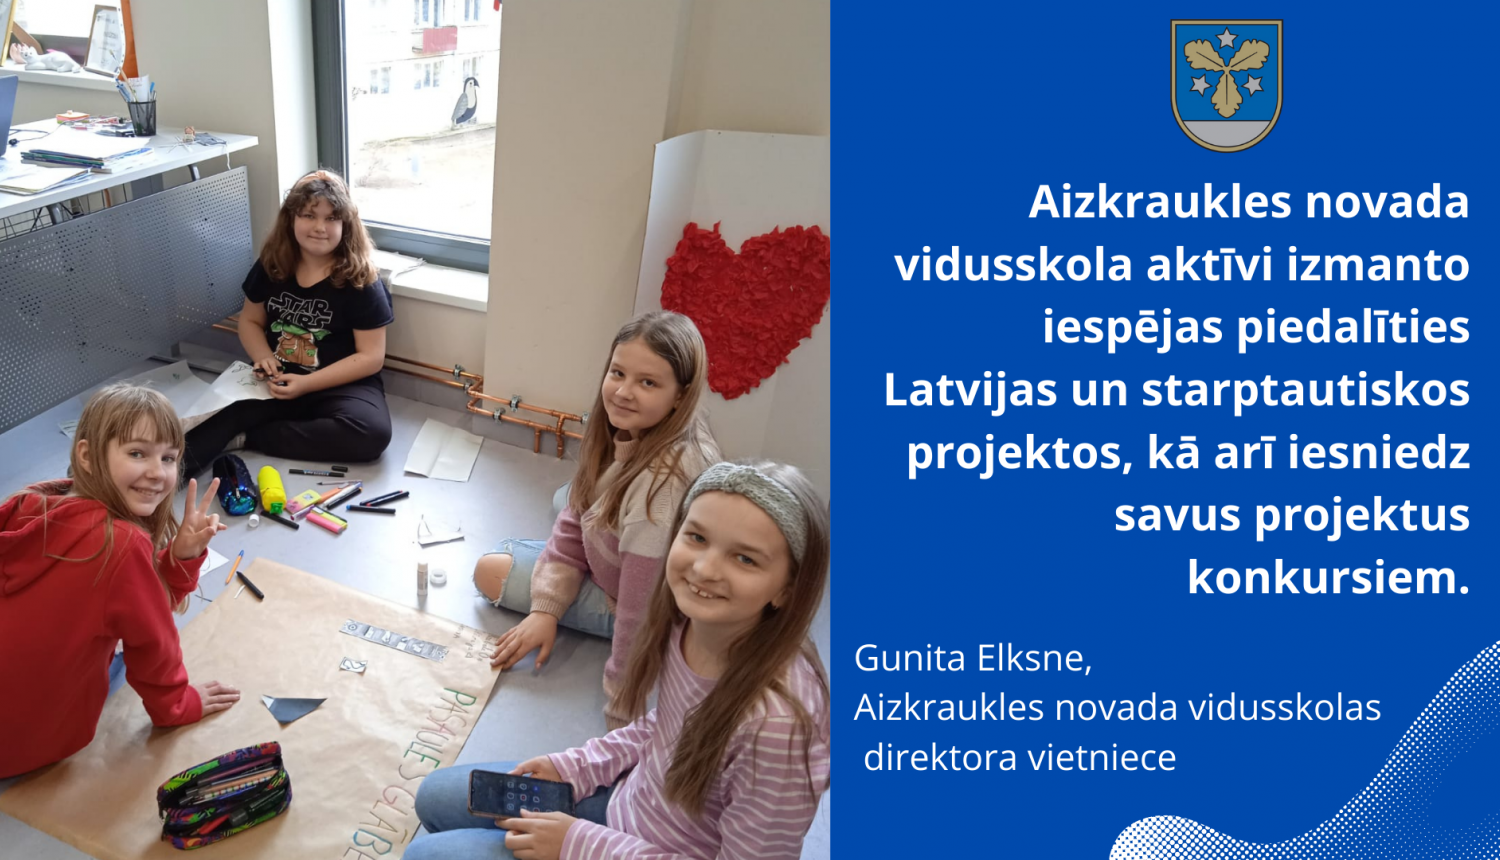 Aizkraukles novada vidusskola aktīvi izmanto iespējas piedalīties Latvijas un starptautiskos projektos, kā arī iesniedz savus projektus konkursiem